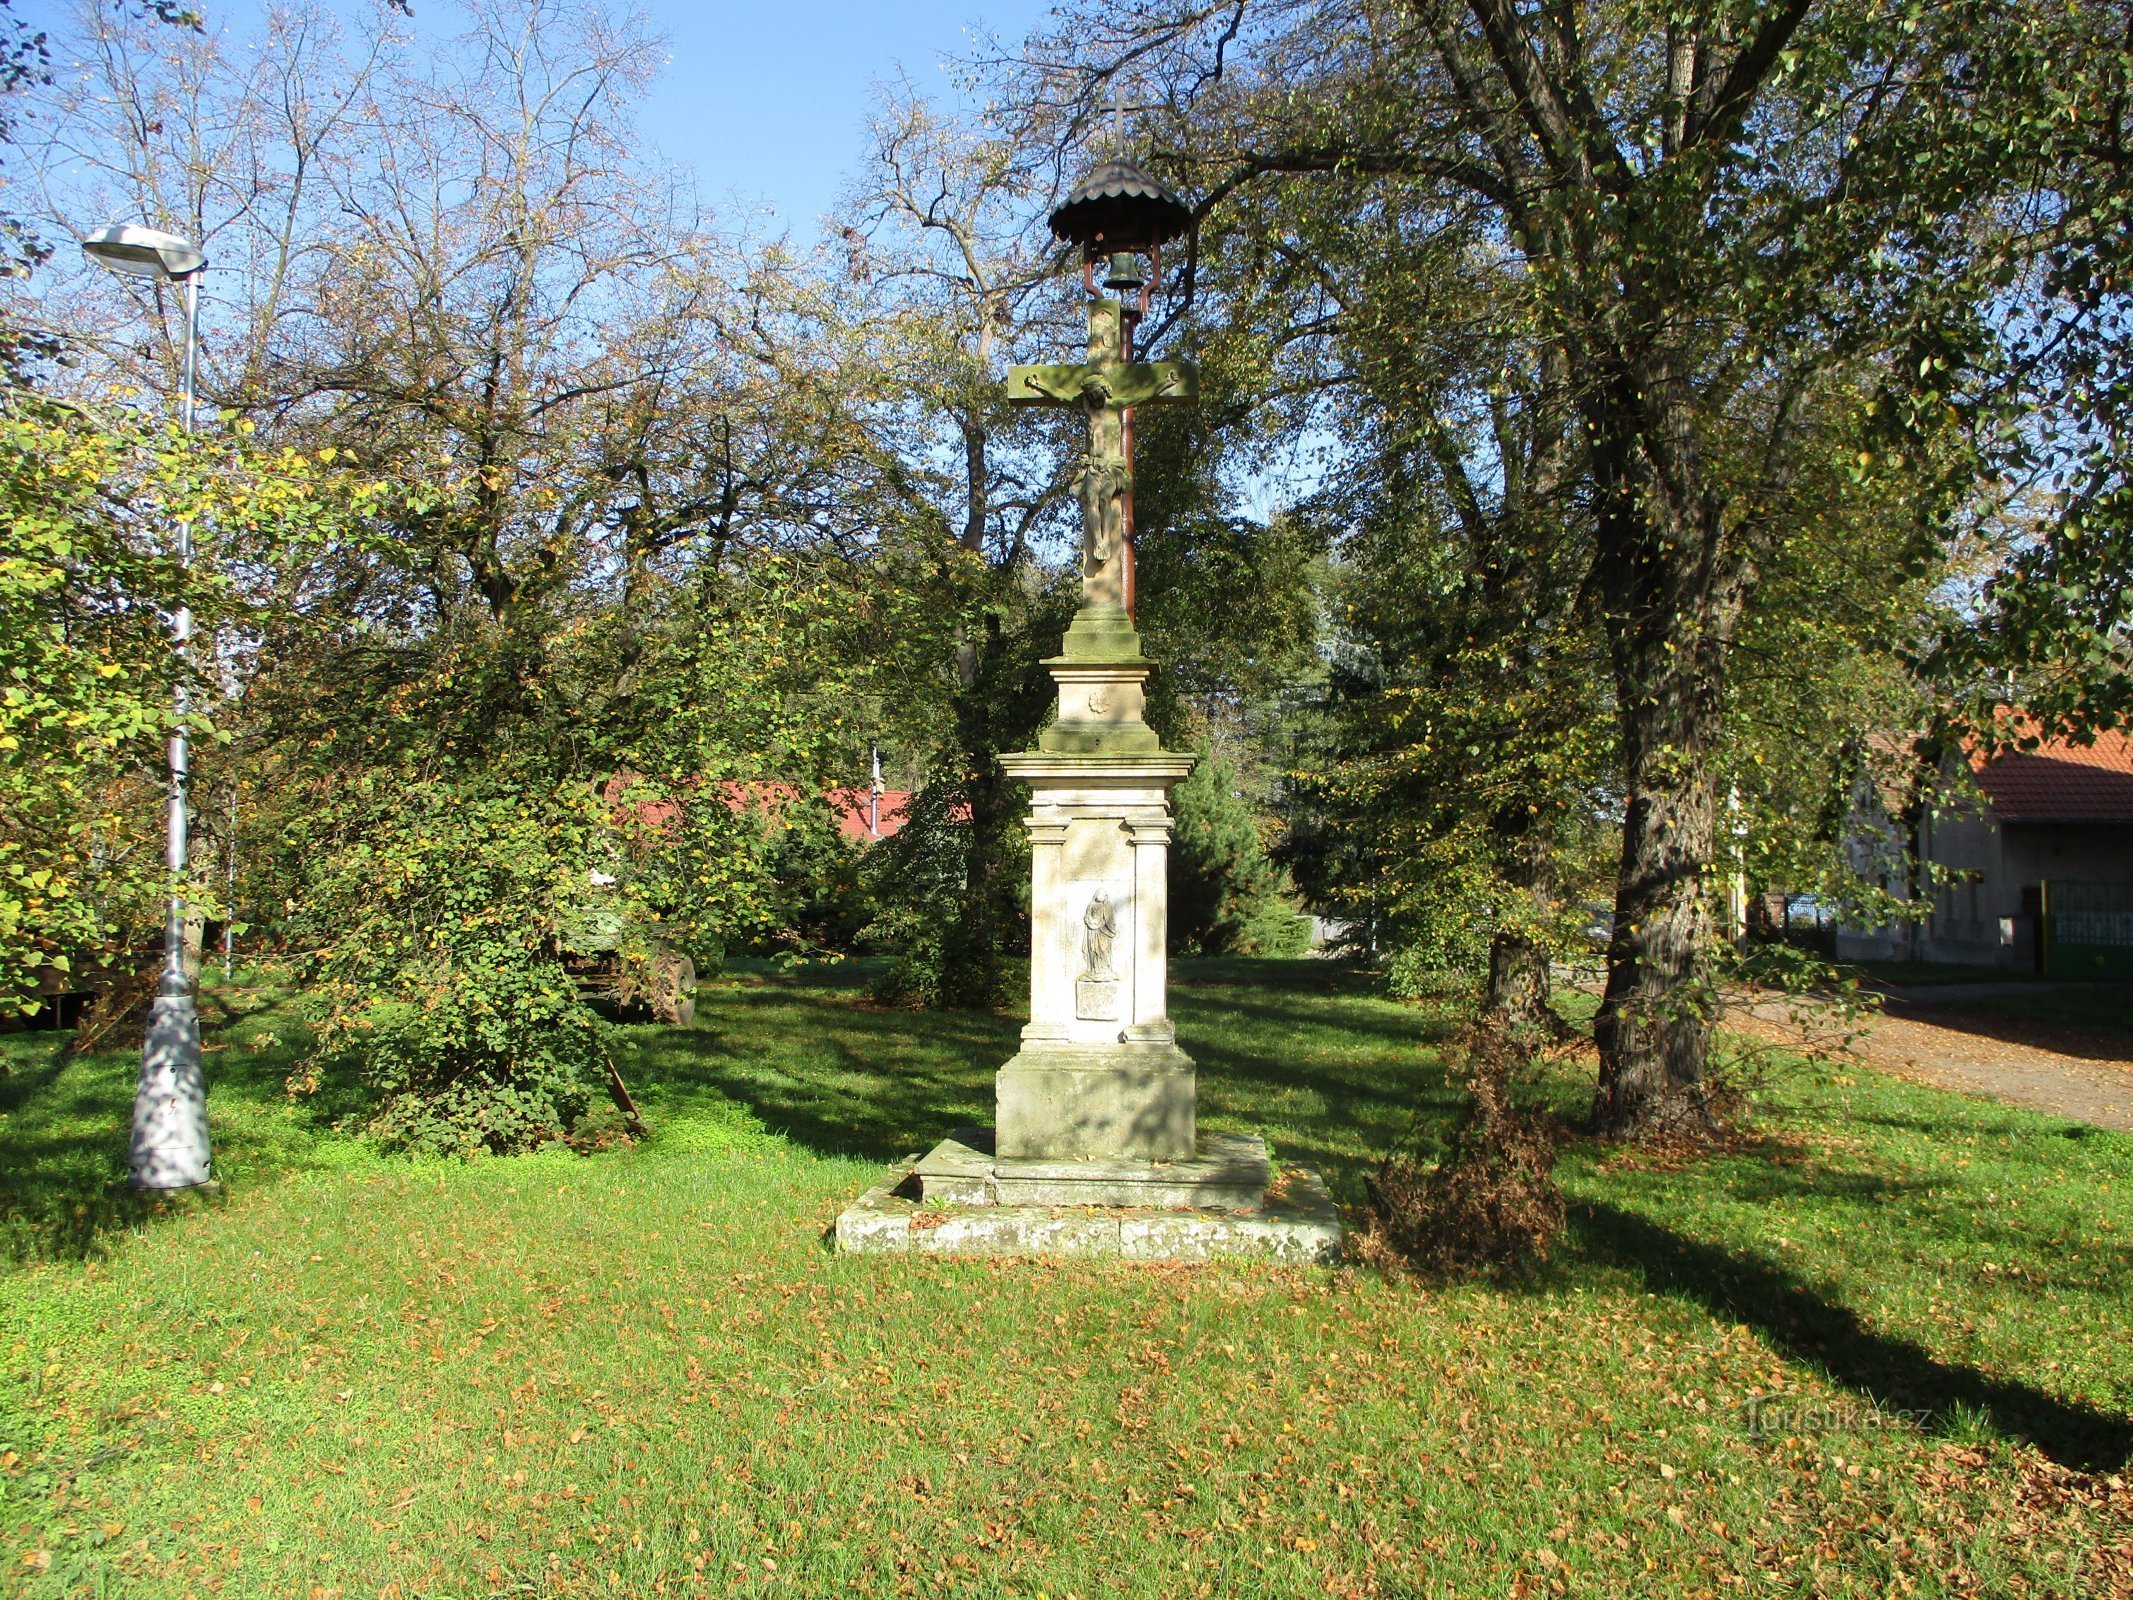 Cruce și clopotniță în Piața Grégrov (Hradec Králové)